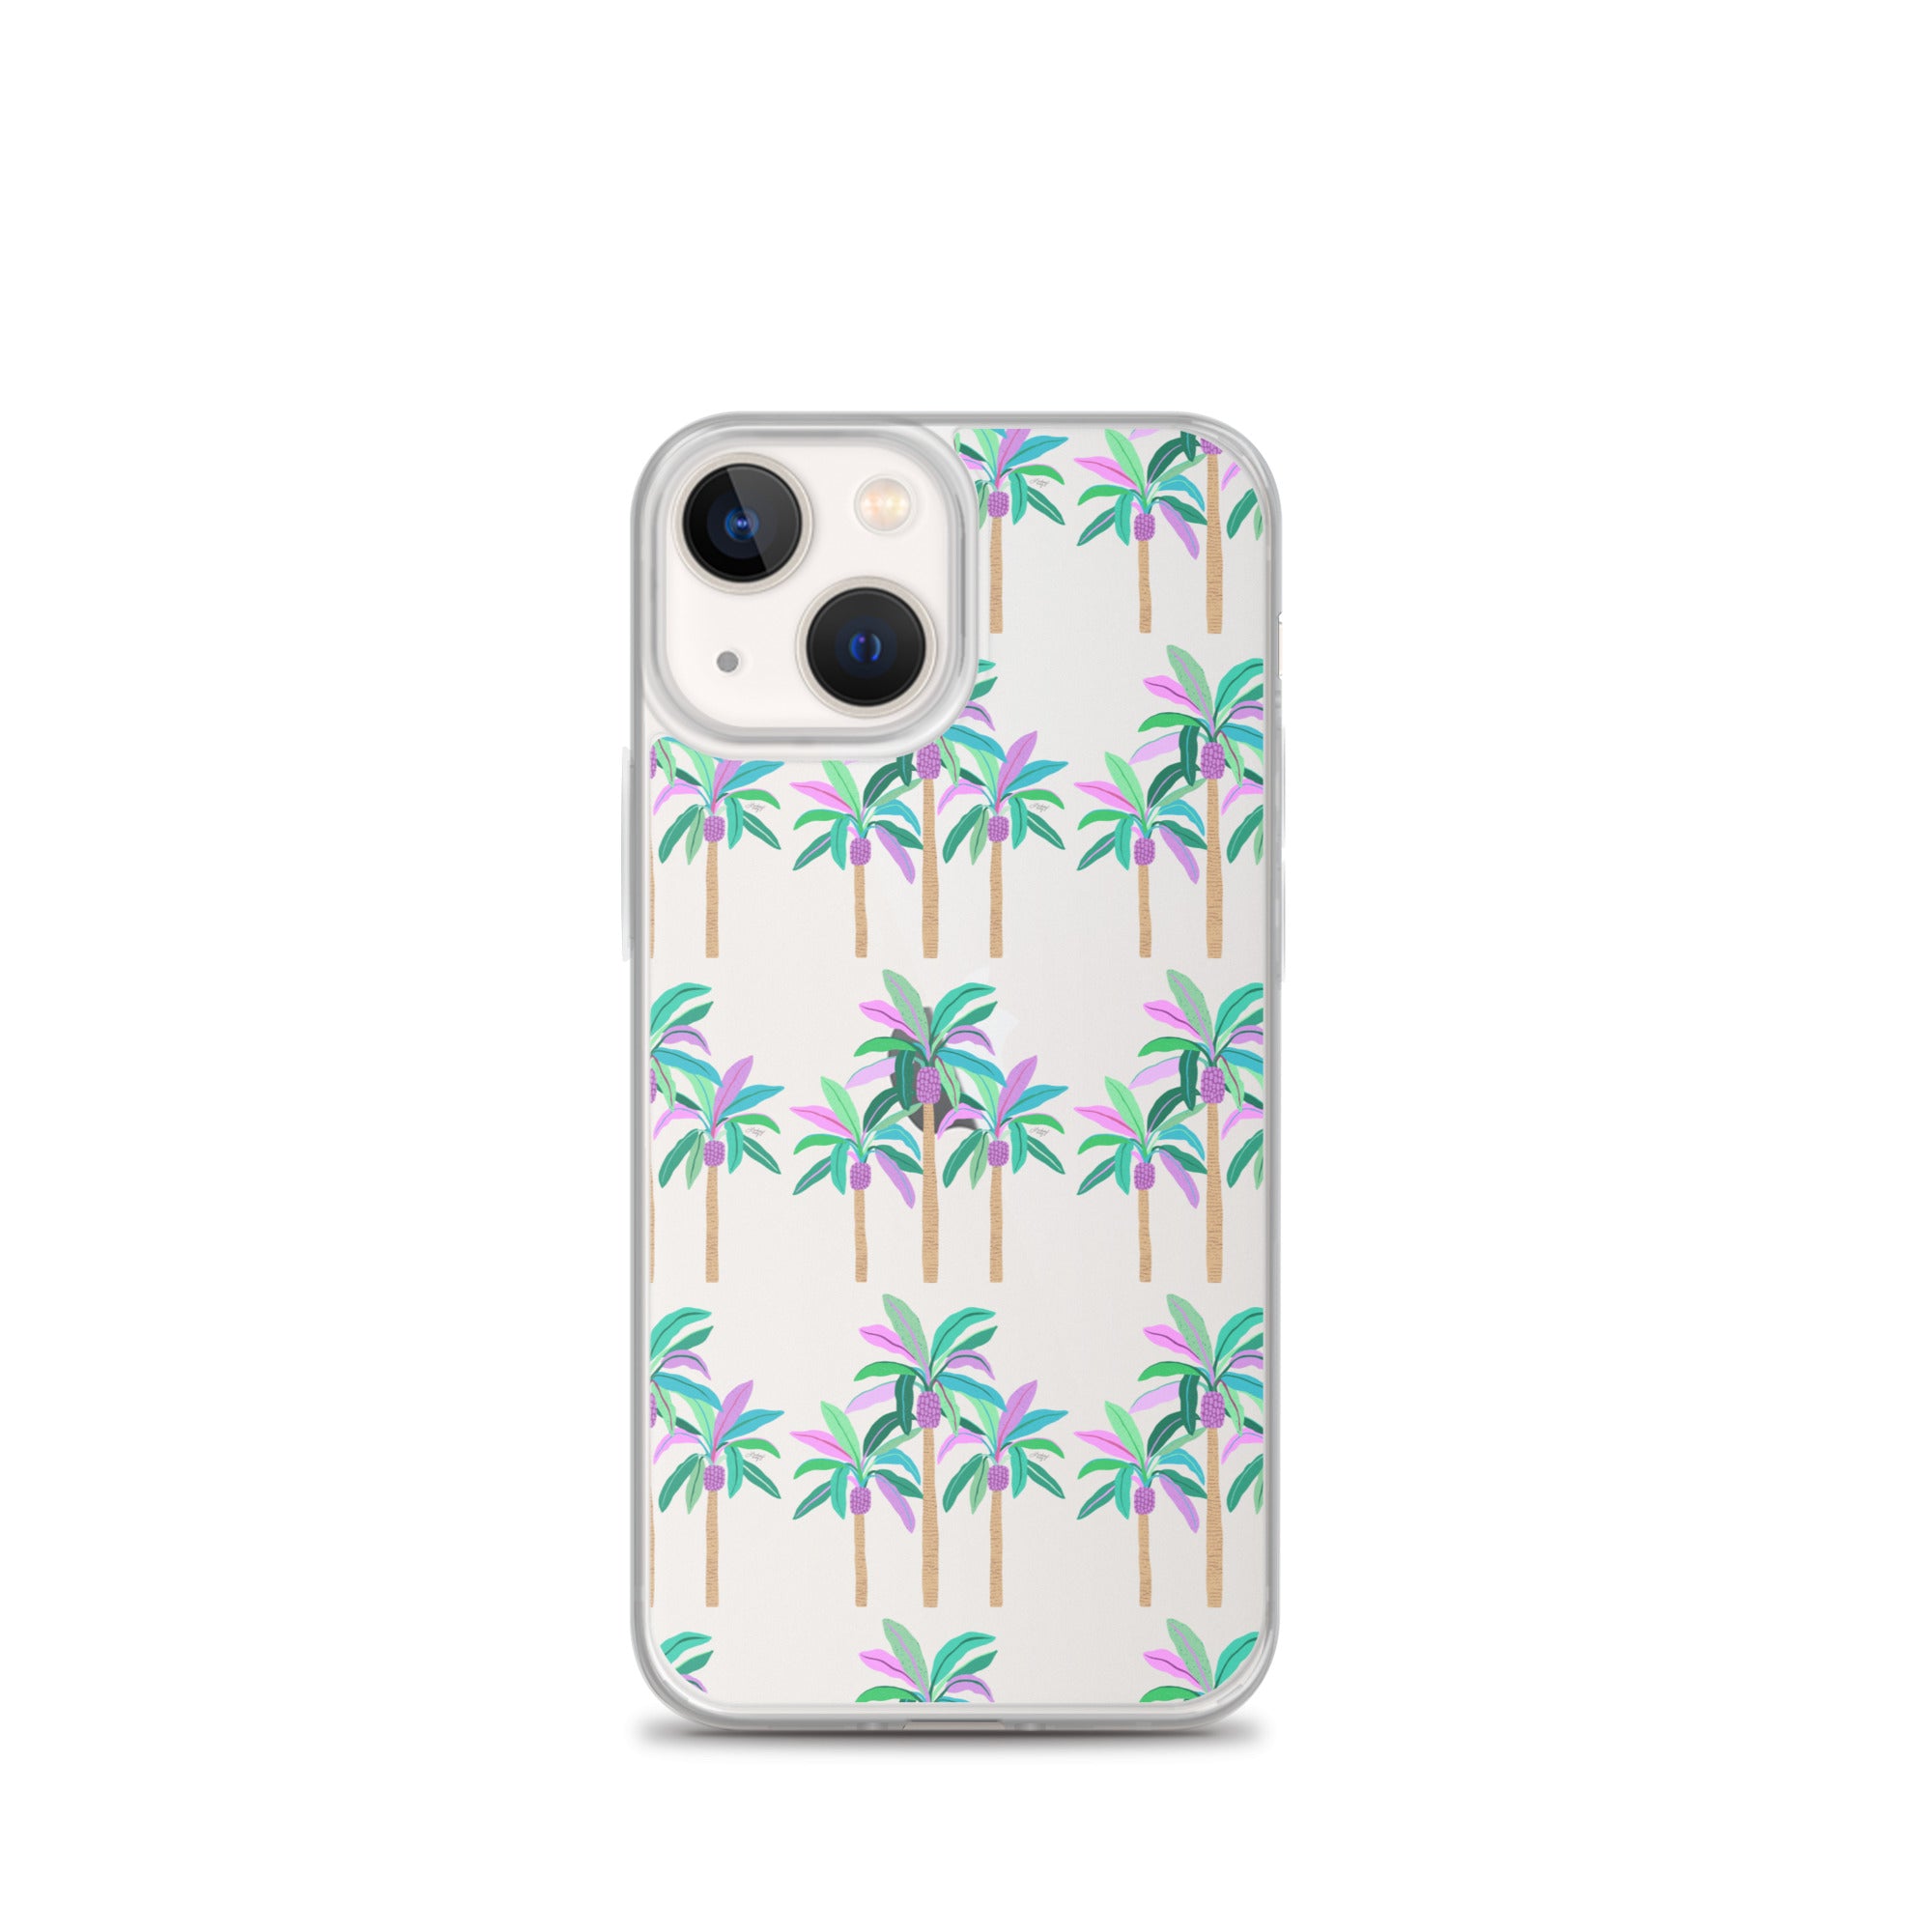 Ilustración de palmeras (Cool Palette) - Funda transparente para iPhone®